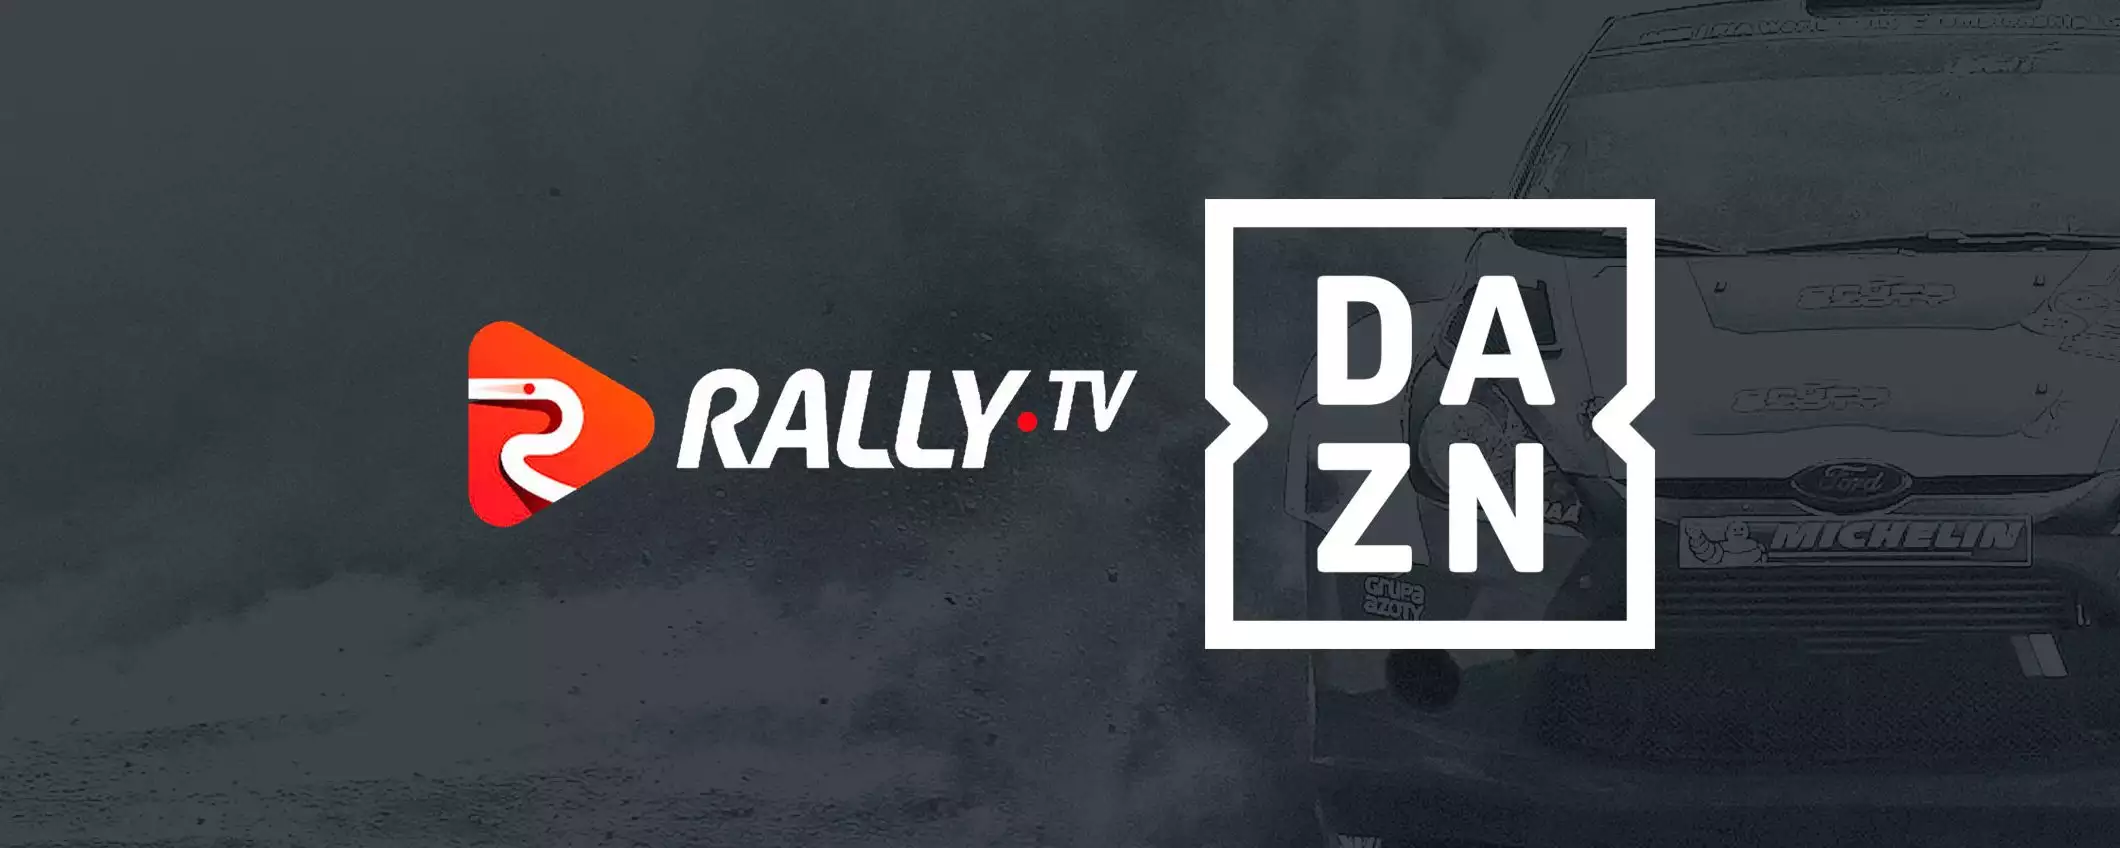 Rally TV arriva su DAZN: si parte con il Rally di Sardegna